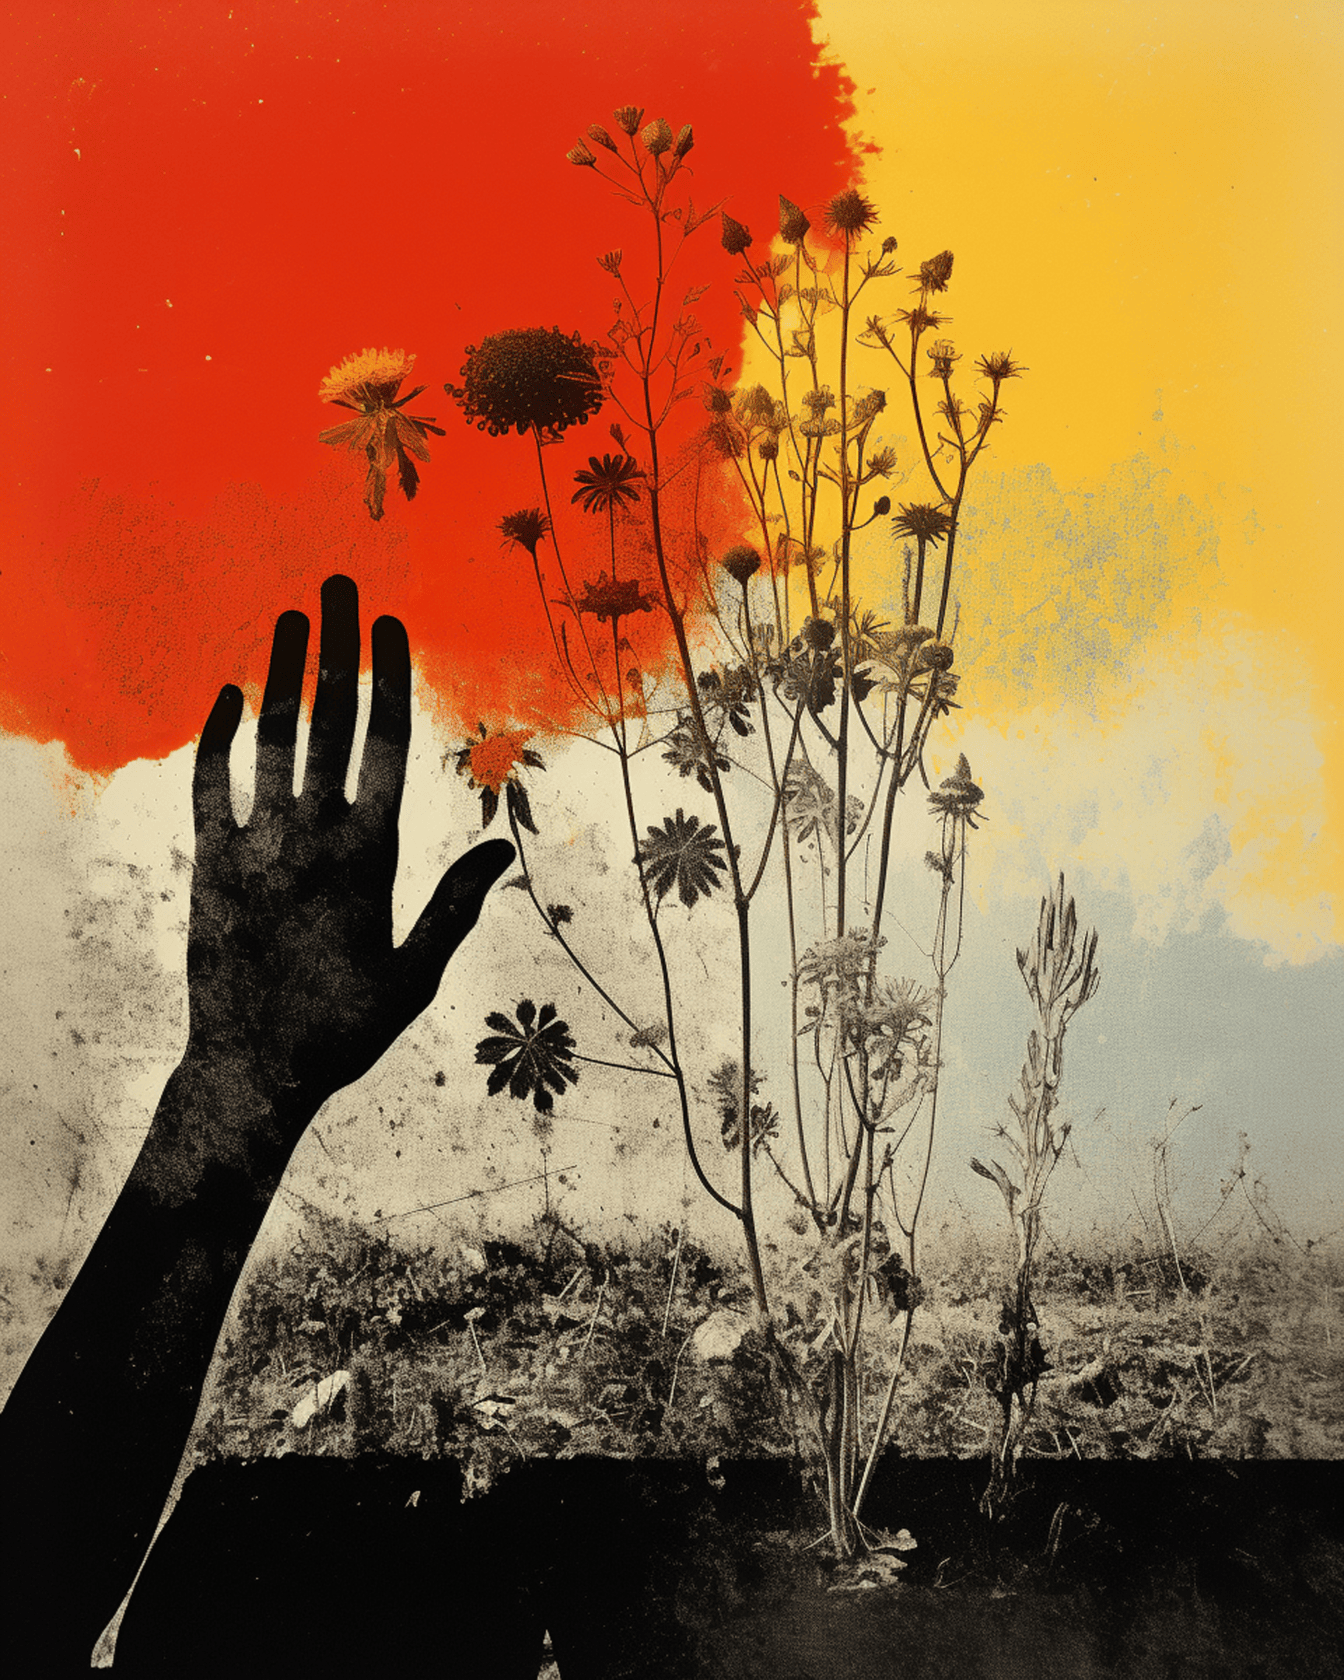 Zwarte hand digitale illustratie met oranje gele achtergrond